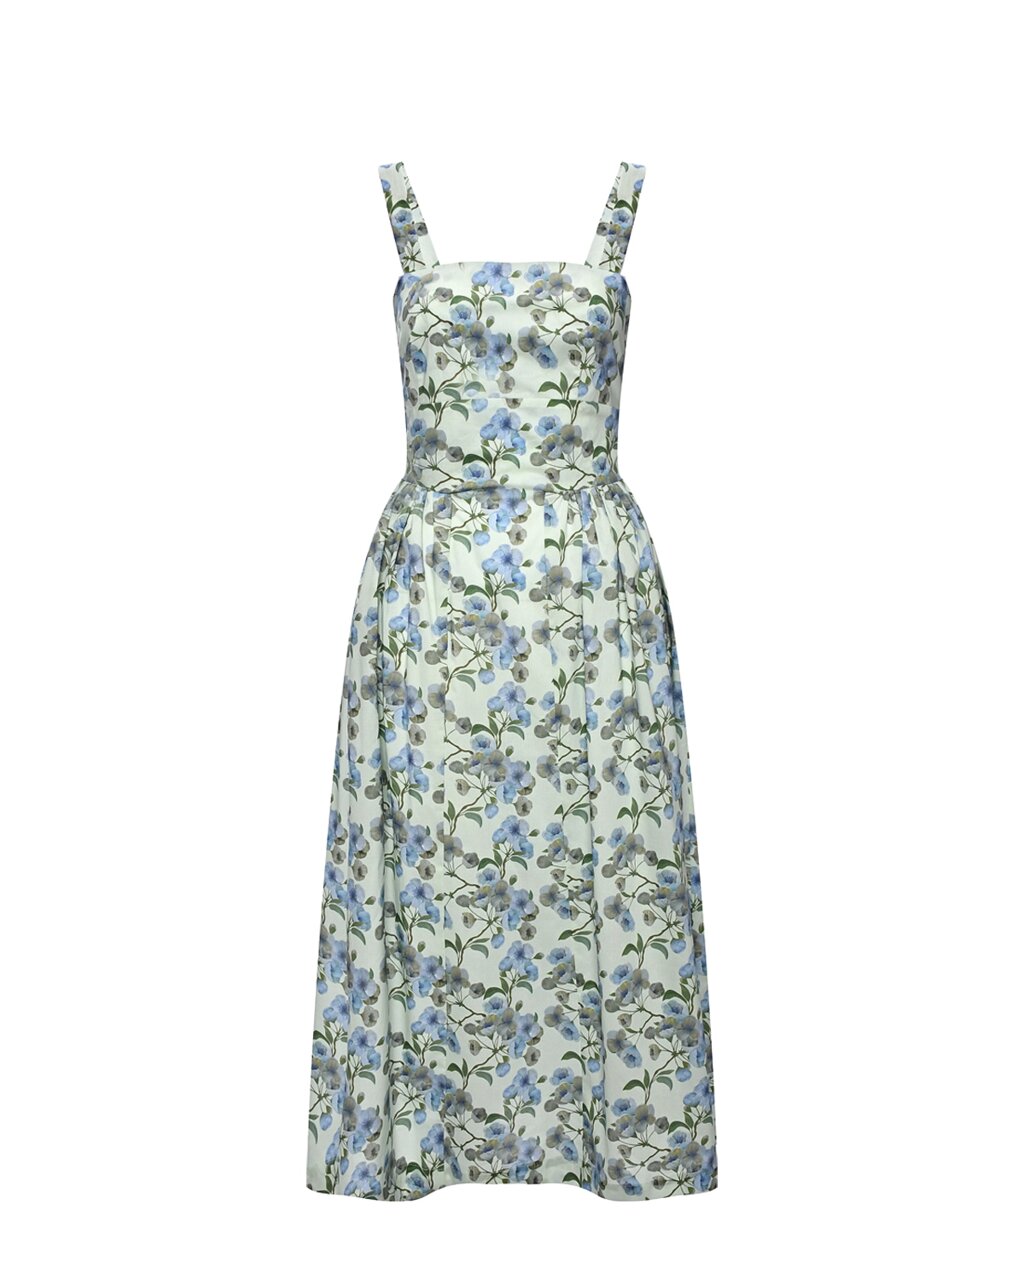 Платье с голубым цветочным принтом Dan Maralex от компании Admi - фото 1